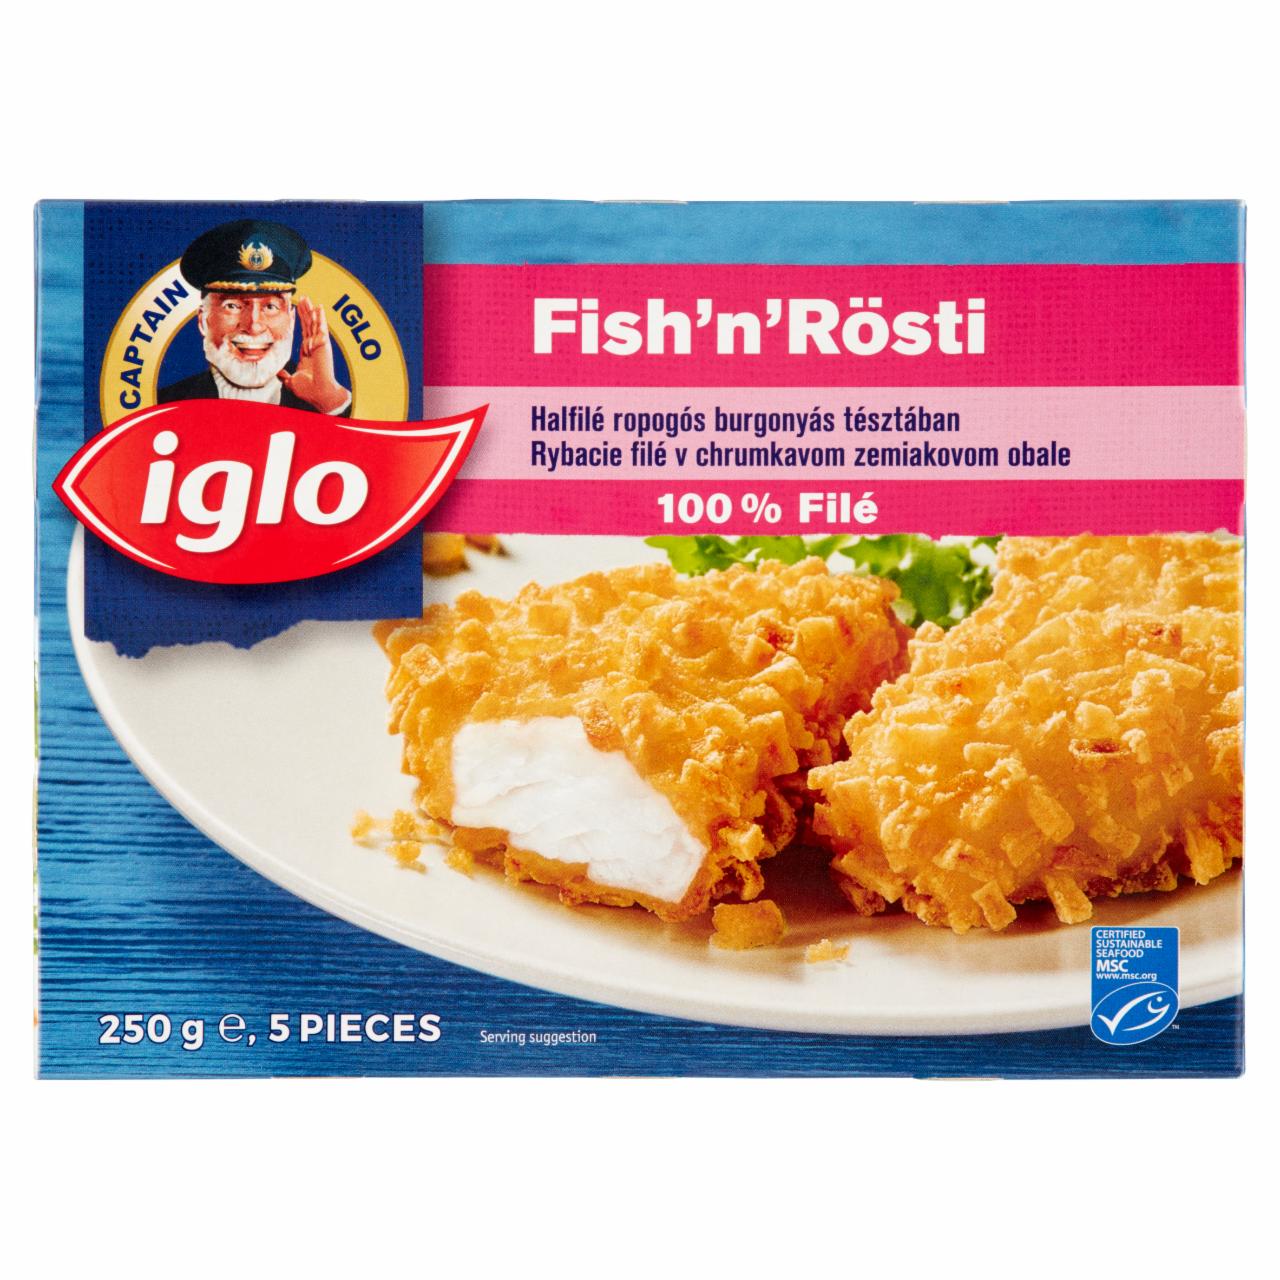 Képek - Iglo Fish'n'Rösti gyorsfagyasztott halfilé ropogós burgonyás tésztában 5 db 250 g